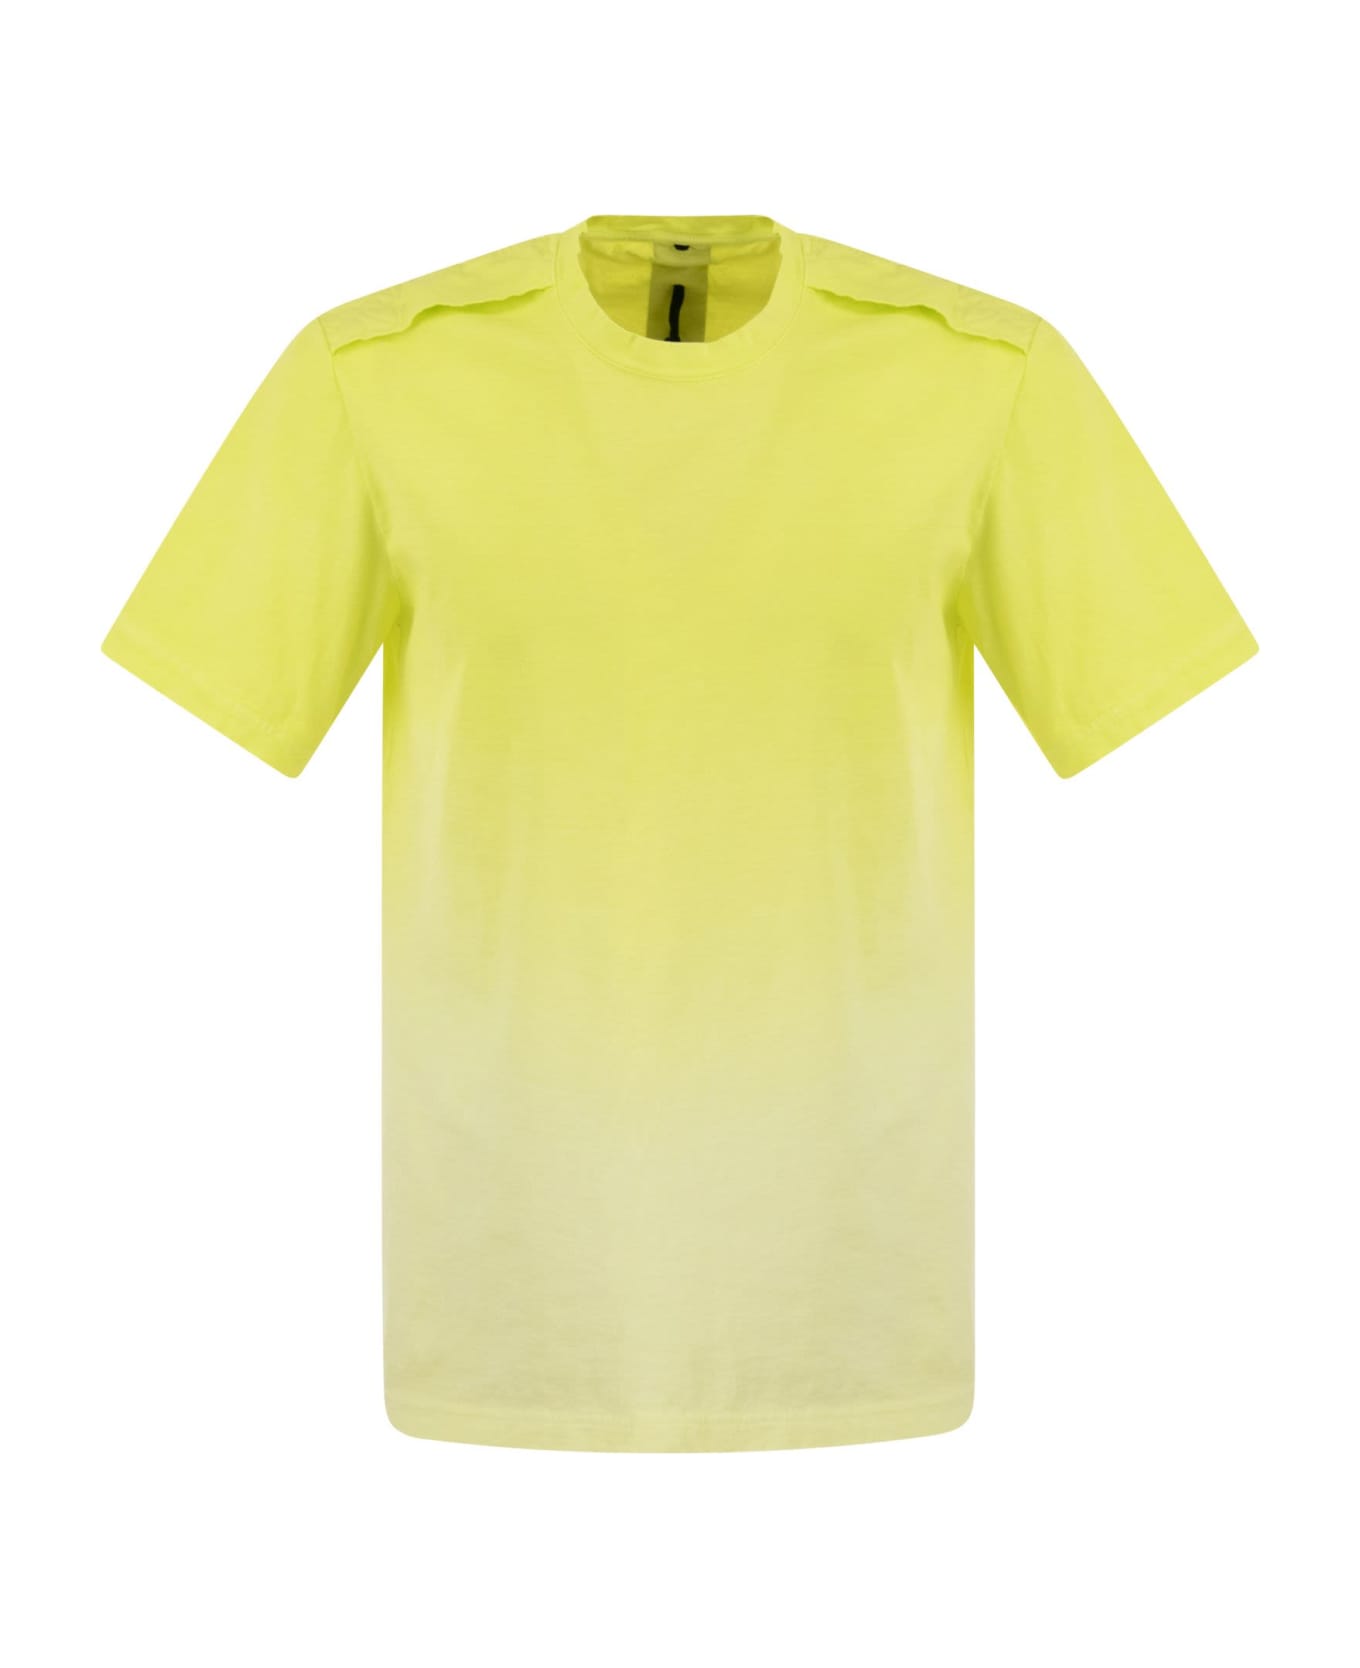 Premiata Cotton T-shirt With Logo - Fluo Yellow